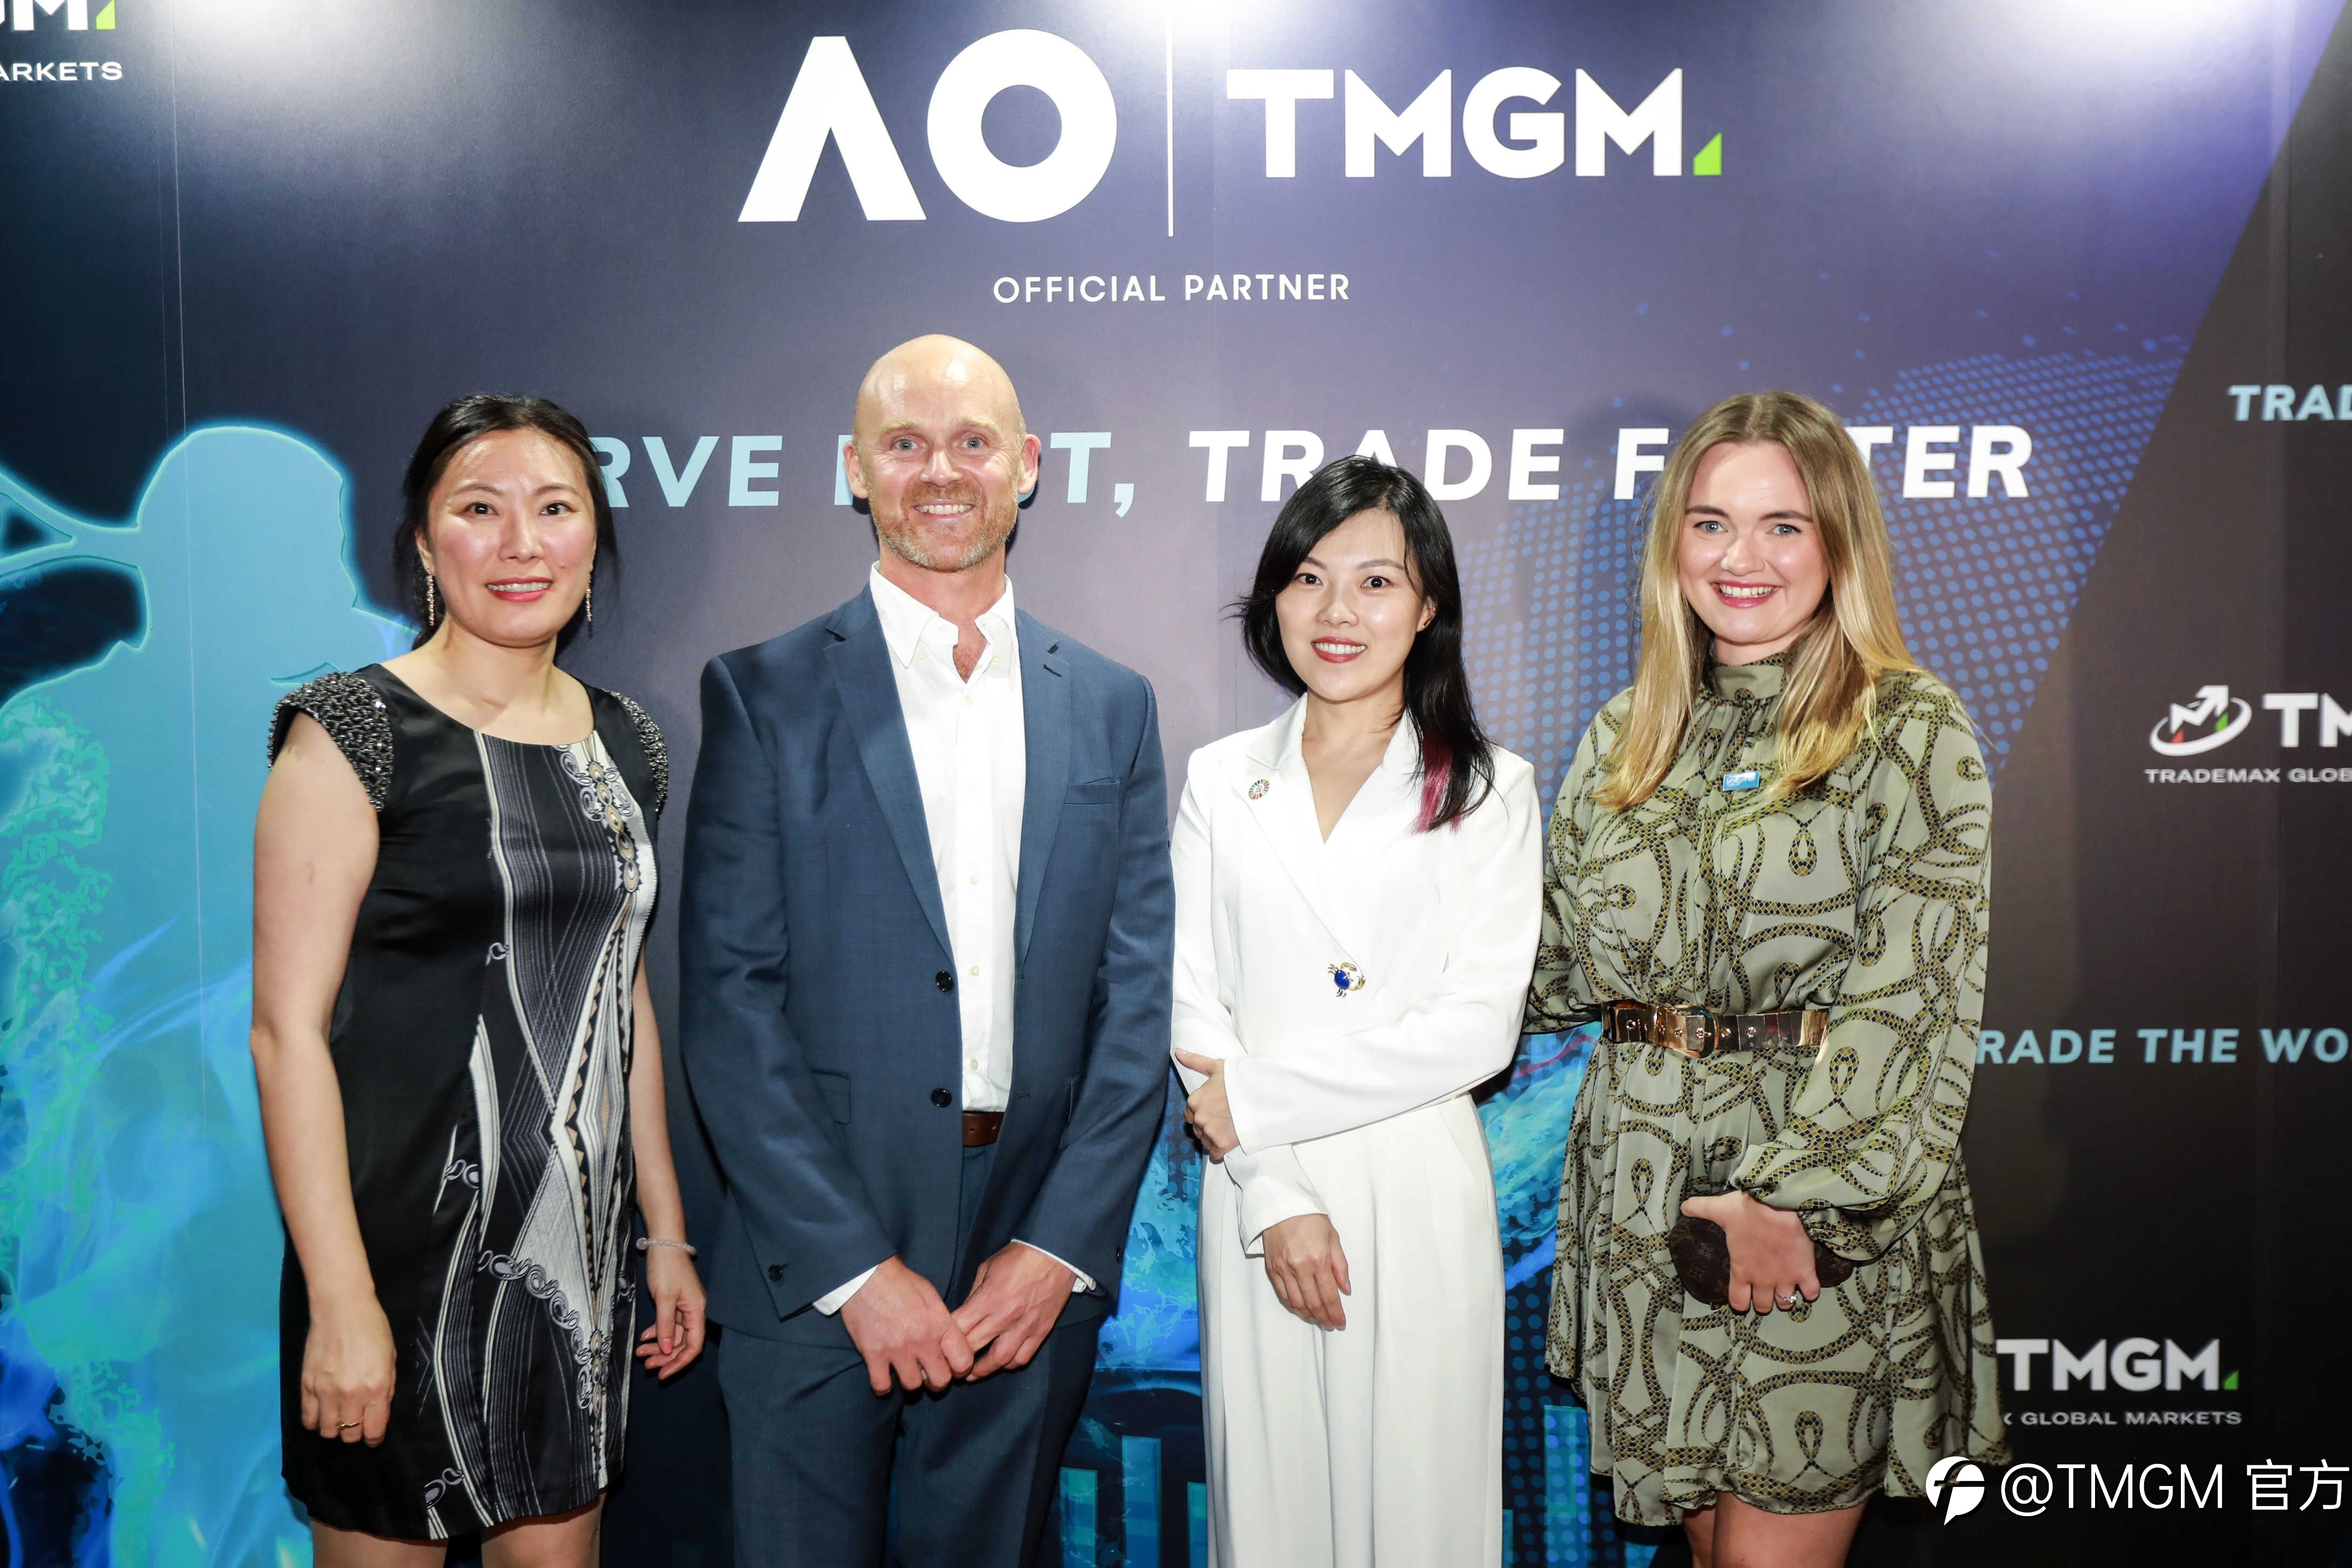 全球领先在线交易平台TMGM与澳大利亚网球公开赛正式缔结长期合作伙伴关系